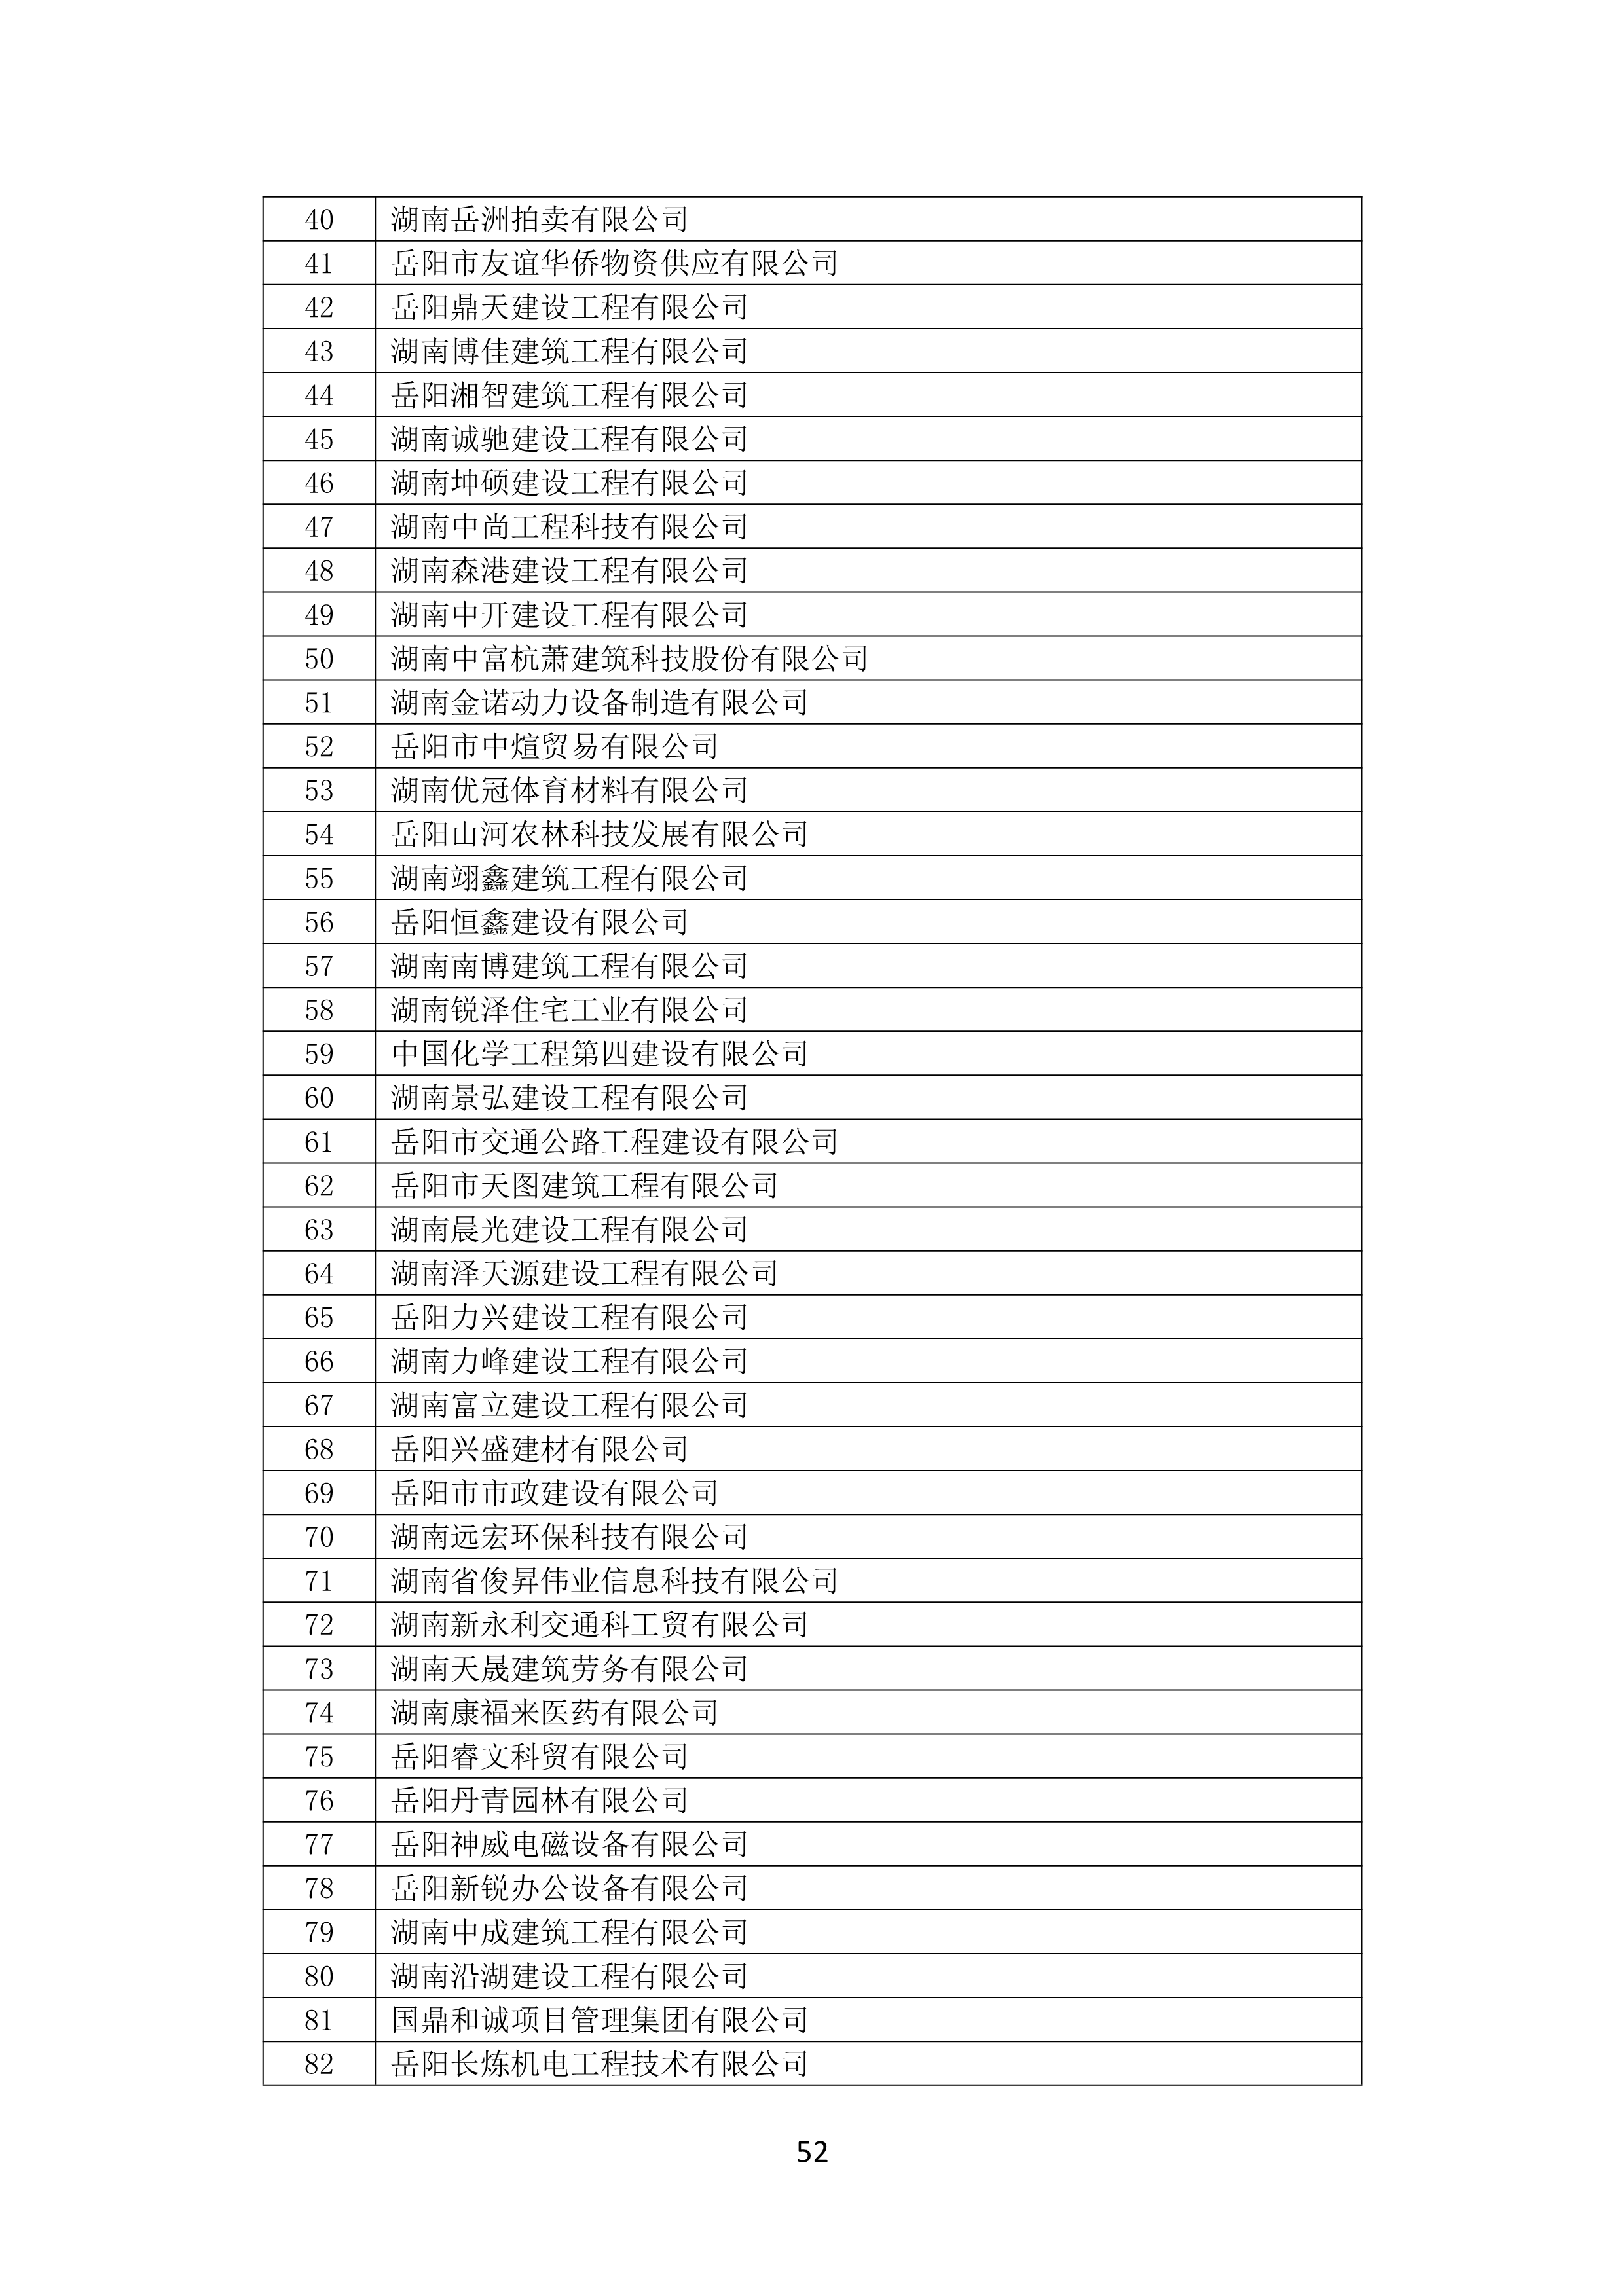 2021 年(nián)度湖南省守合同重信用企業名單_53.png